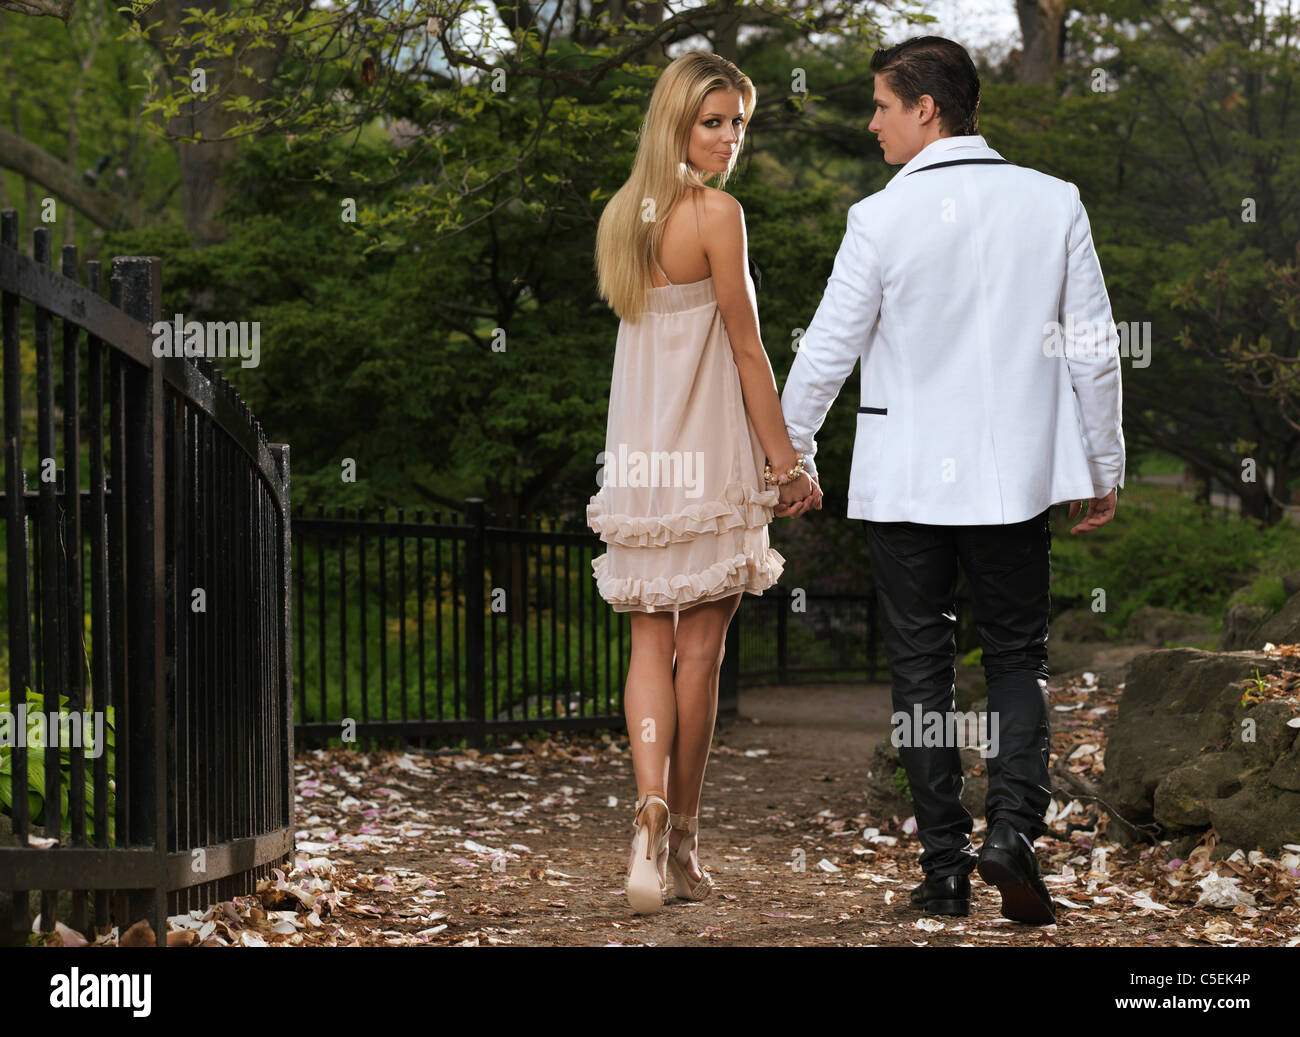 Licenza e stampe alle MaximImages.com:00 - giovane coppia romantica a piedi attraverso un parco tenendo le mani. Primavera panoramica. Foto Stock